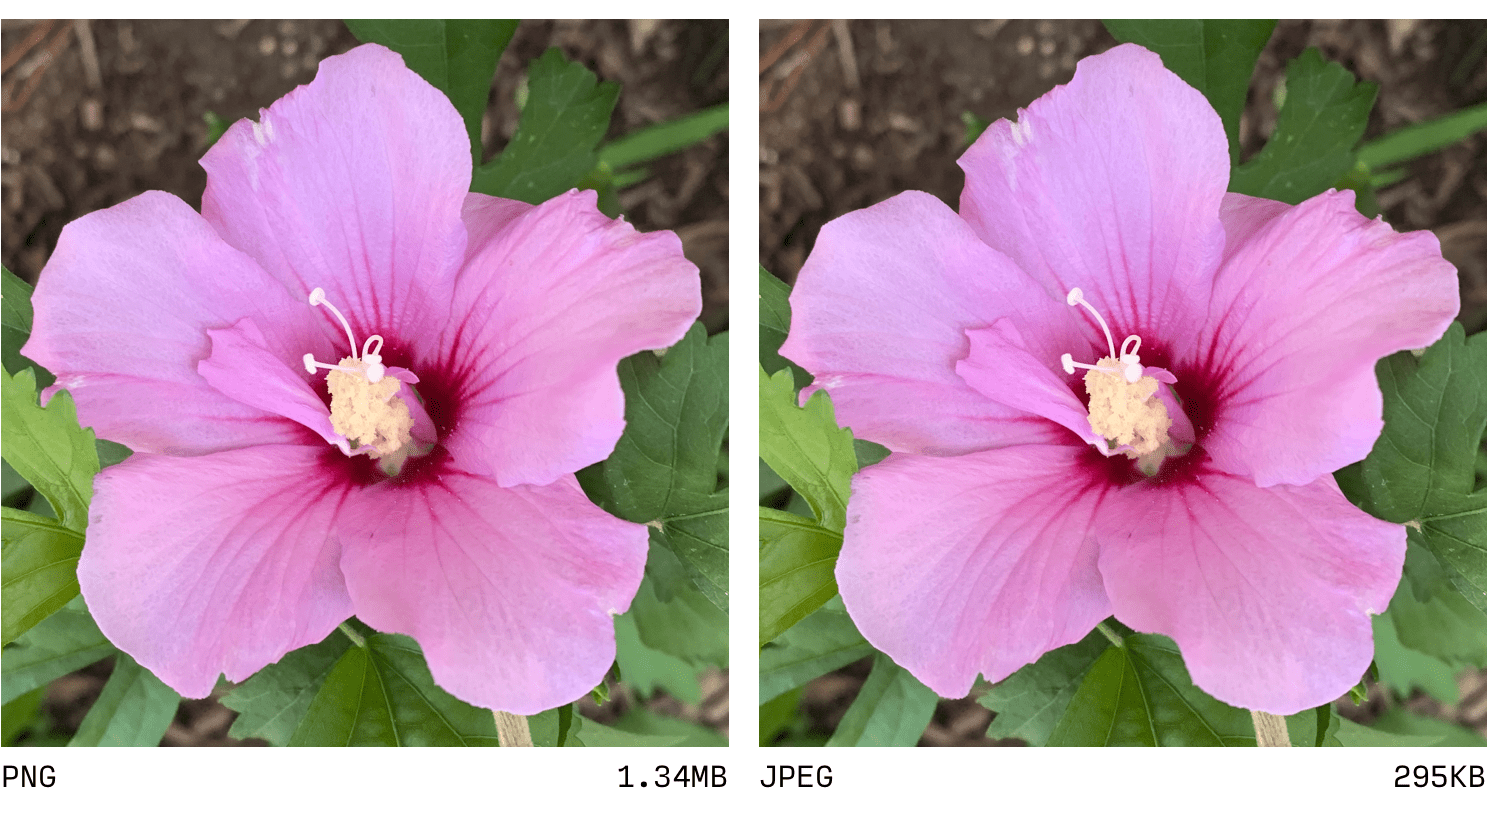 השוואה בין JPEG ל-PNG.